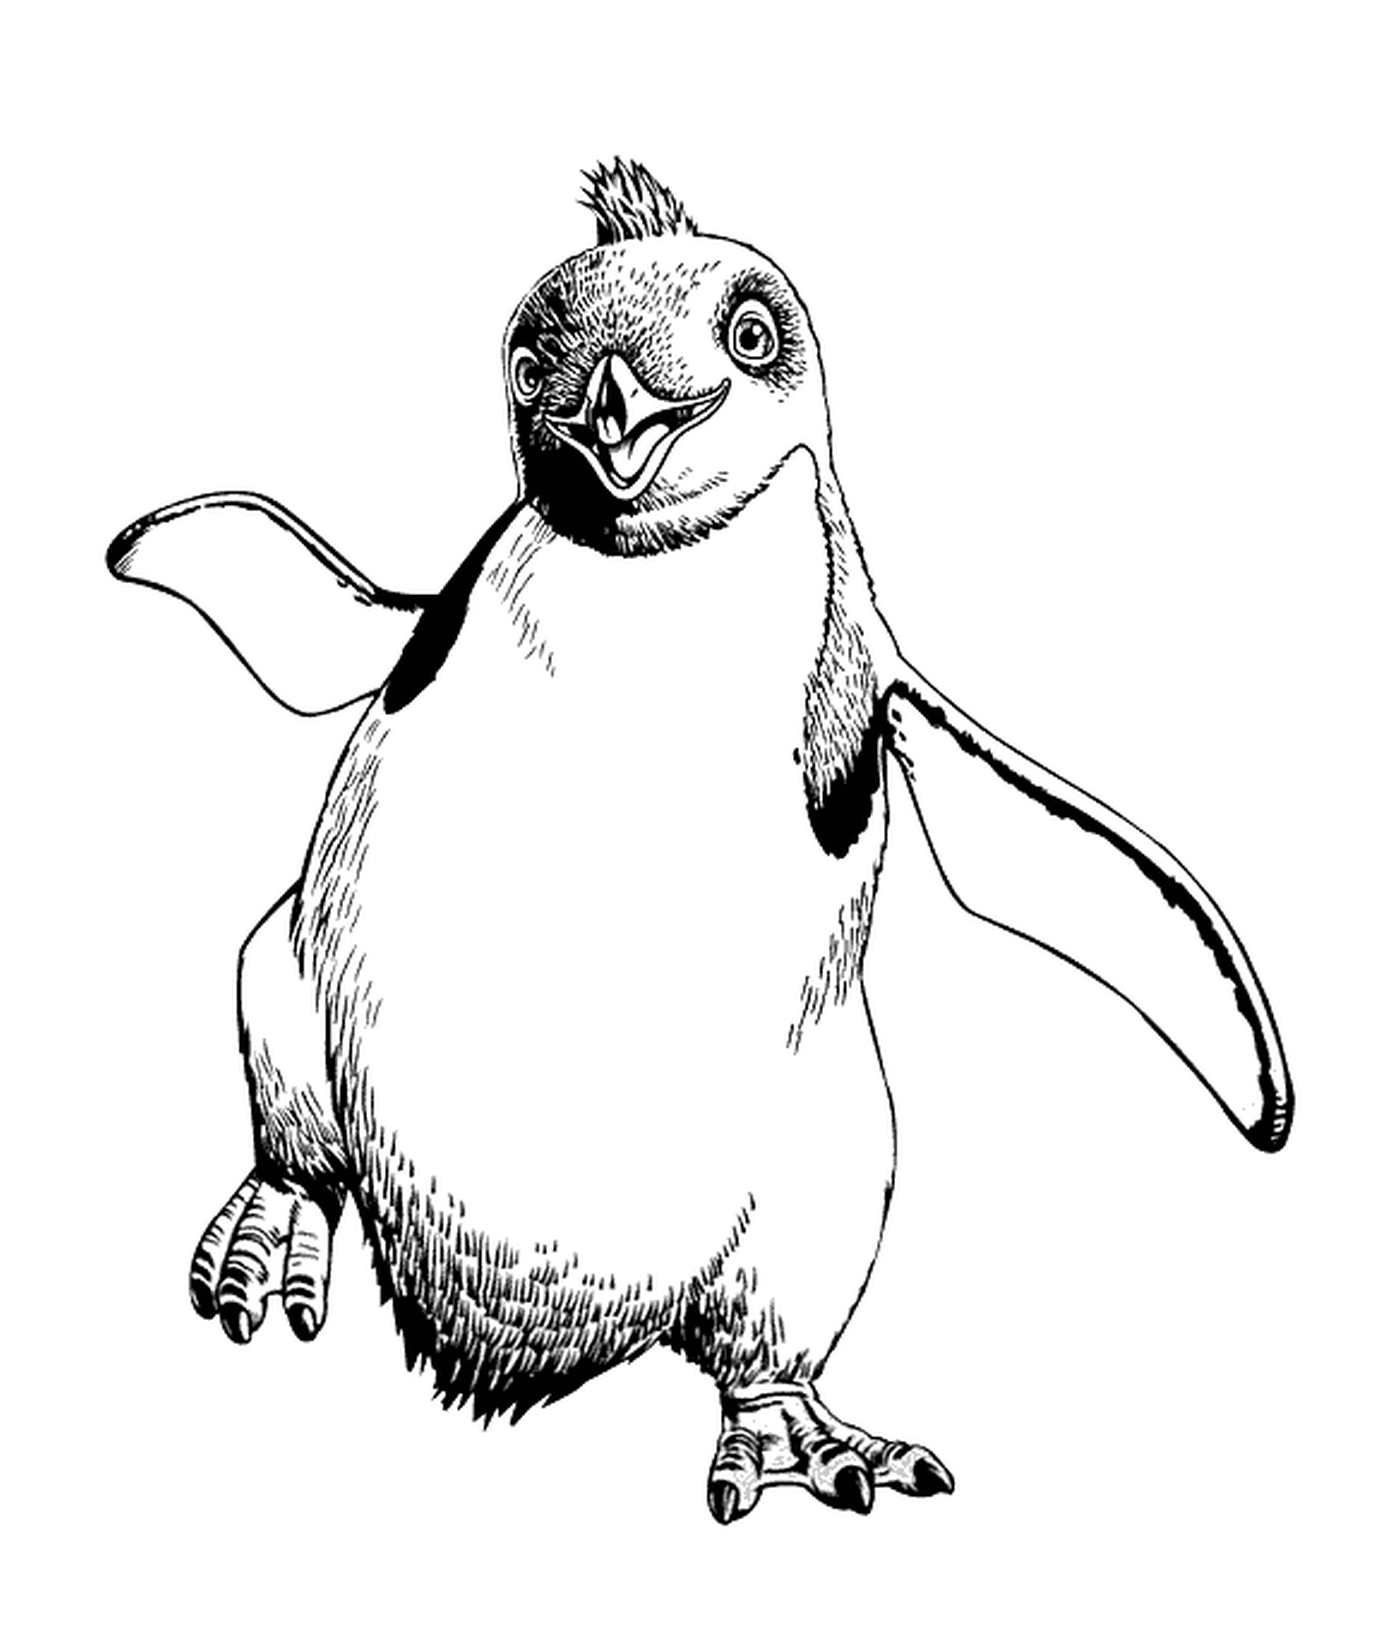  Pinguin läuft ruhig 